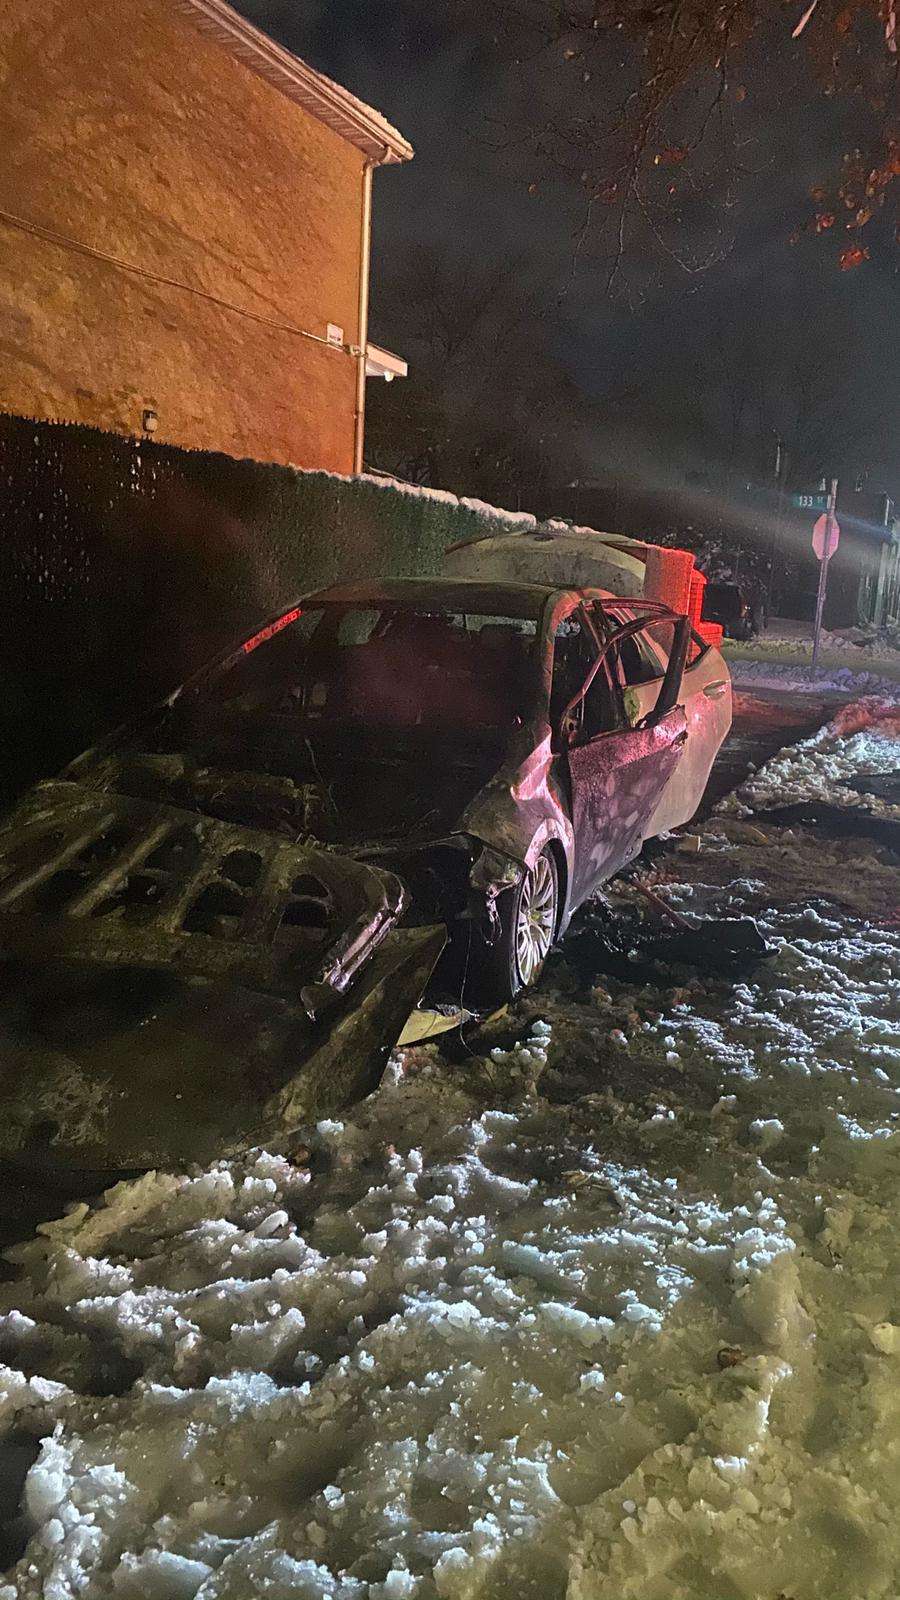 نيويورك : إحتراق سيارة يمني أمريكي في كوينز بعدما حاول انتشالها من وسط الثلوج